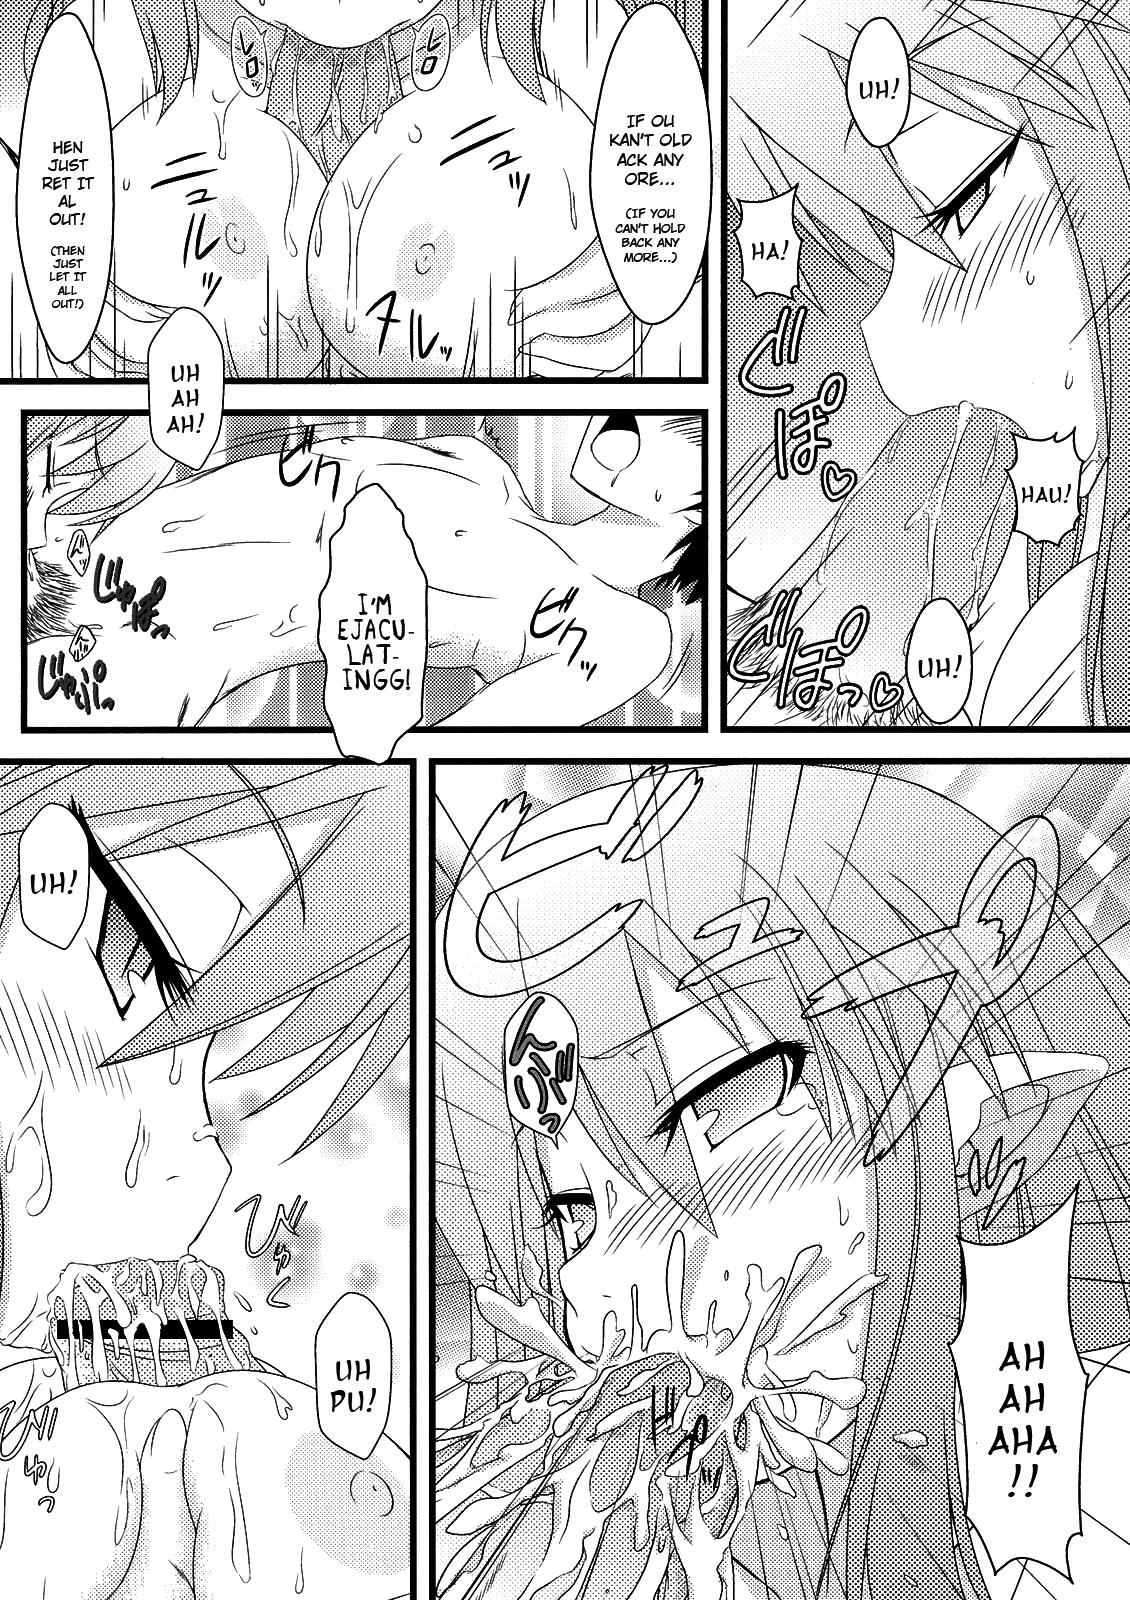 Caliente Hajimete no Omocha! - Lotte no omocha Teenies - Page 6